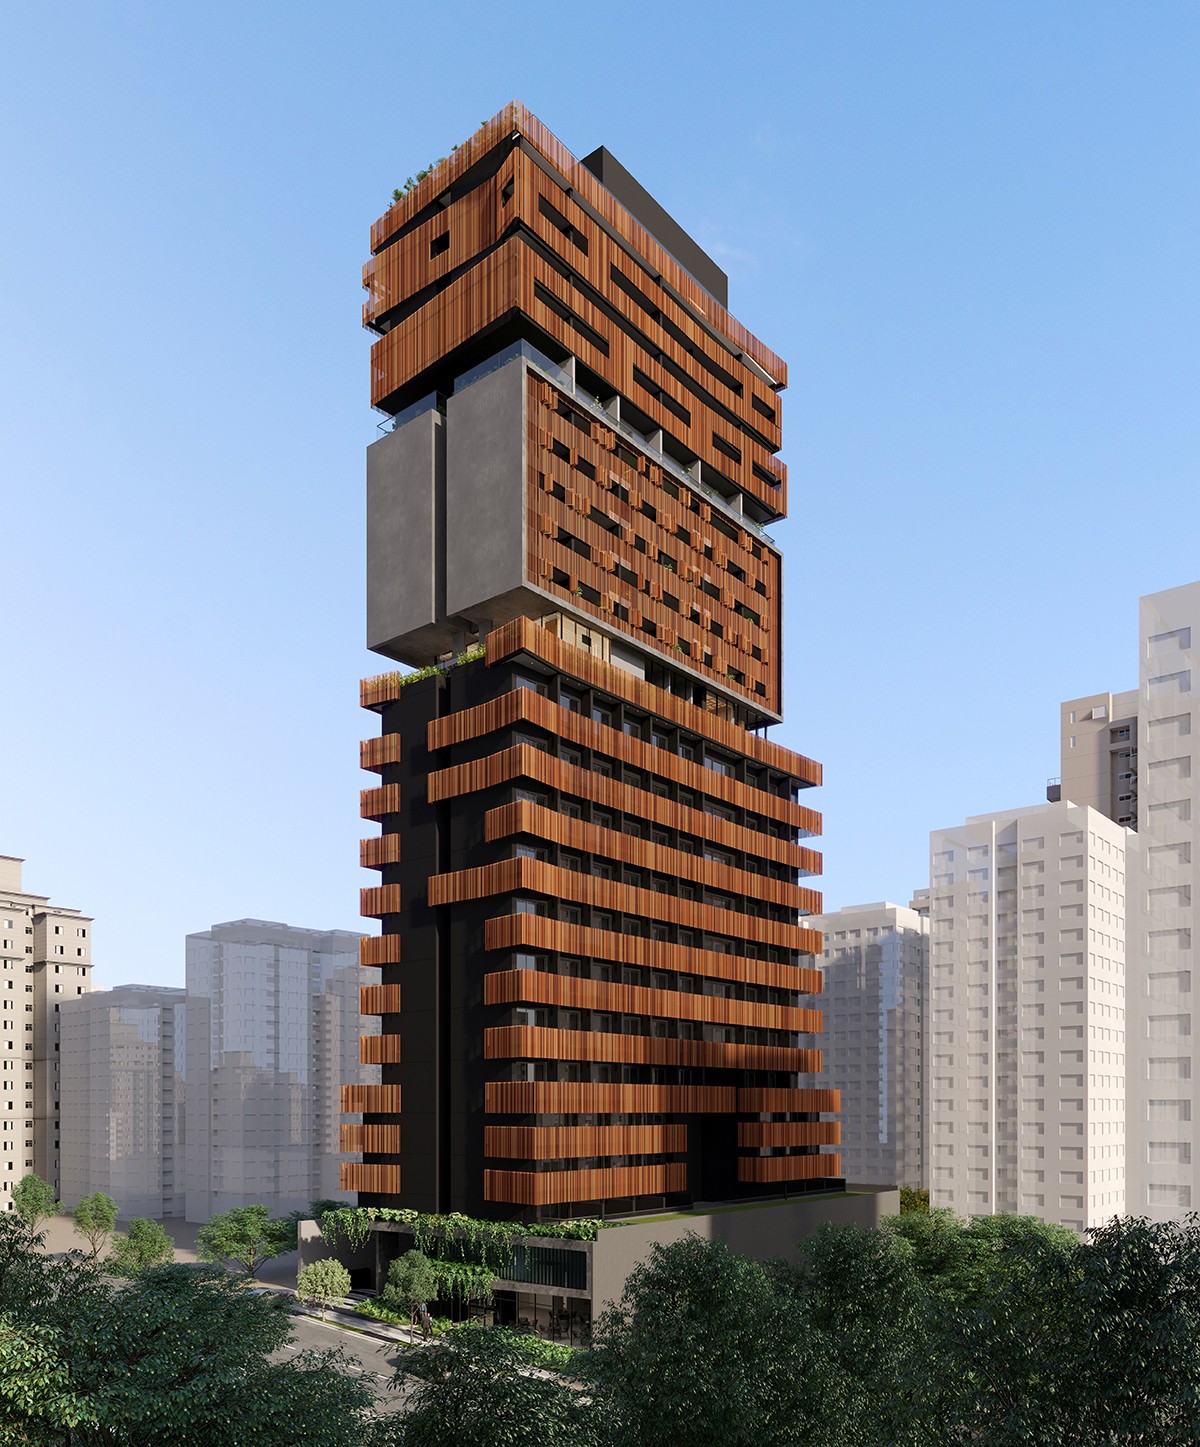 A  divisão do edifício – em uma espécie de fatias sobrepostas – tira o aspecto de caixa e o prédio se transforma em algo mais escultórico (Foto: You,inc / Divulgação)